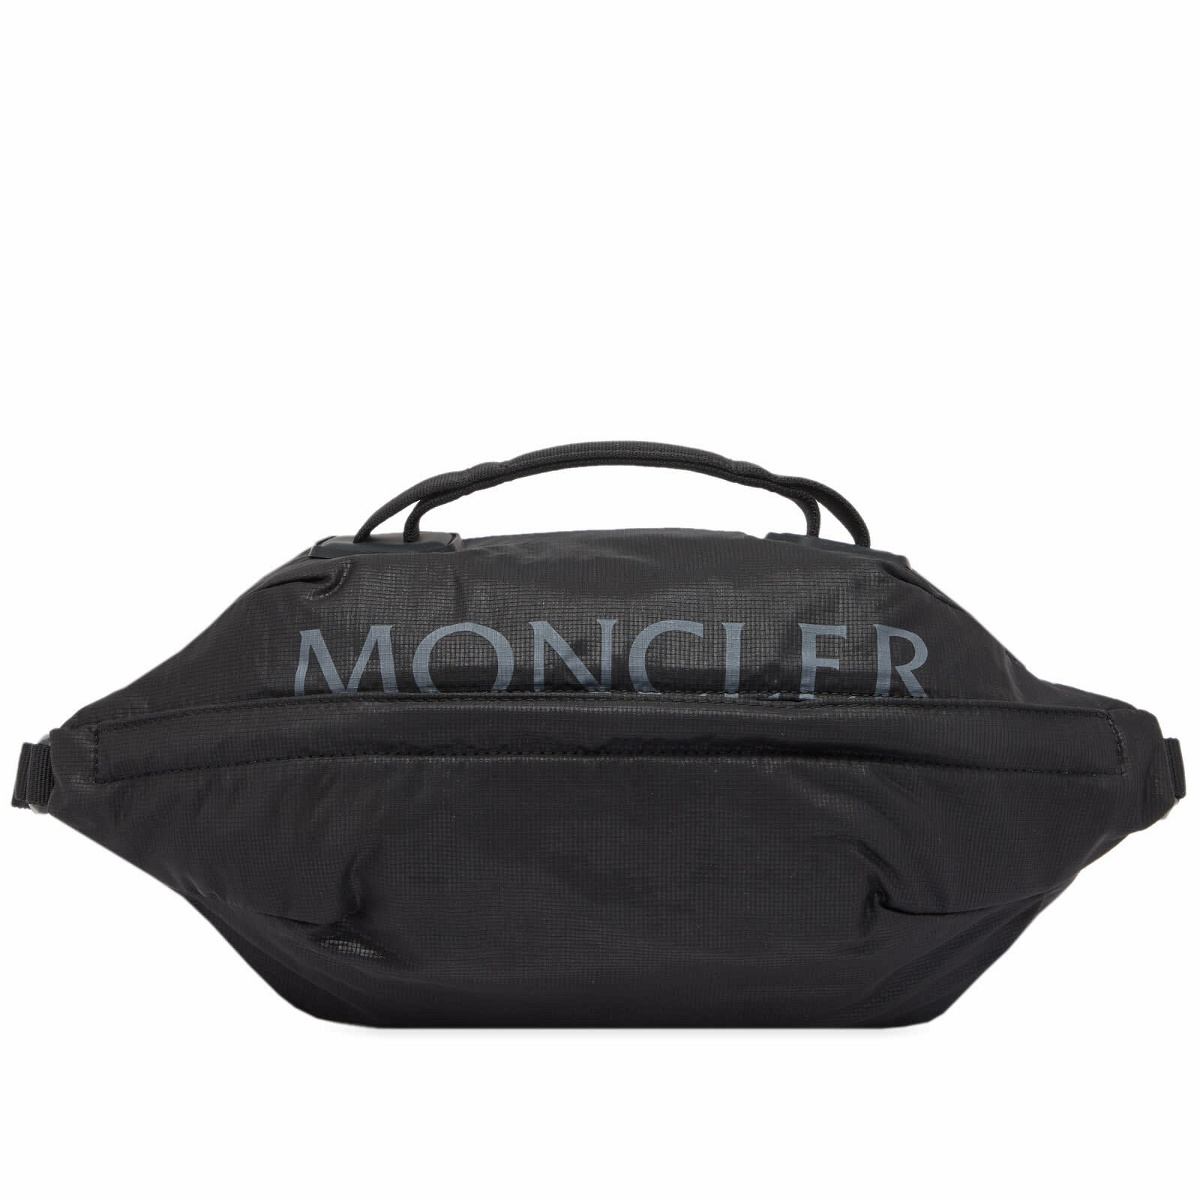 Moncler Men's Alchemy Belt Bag in Black Moncler